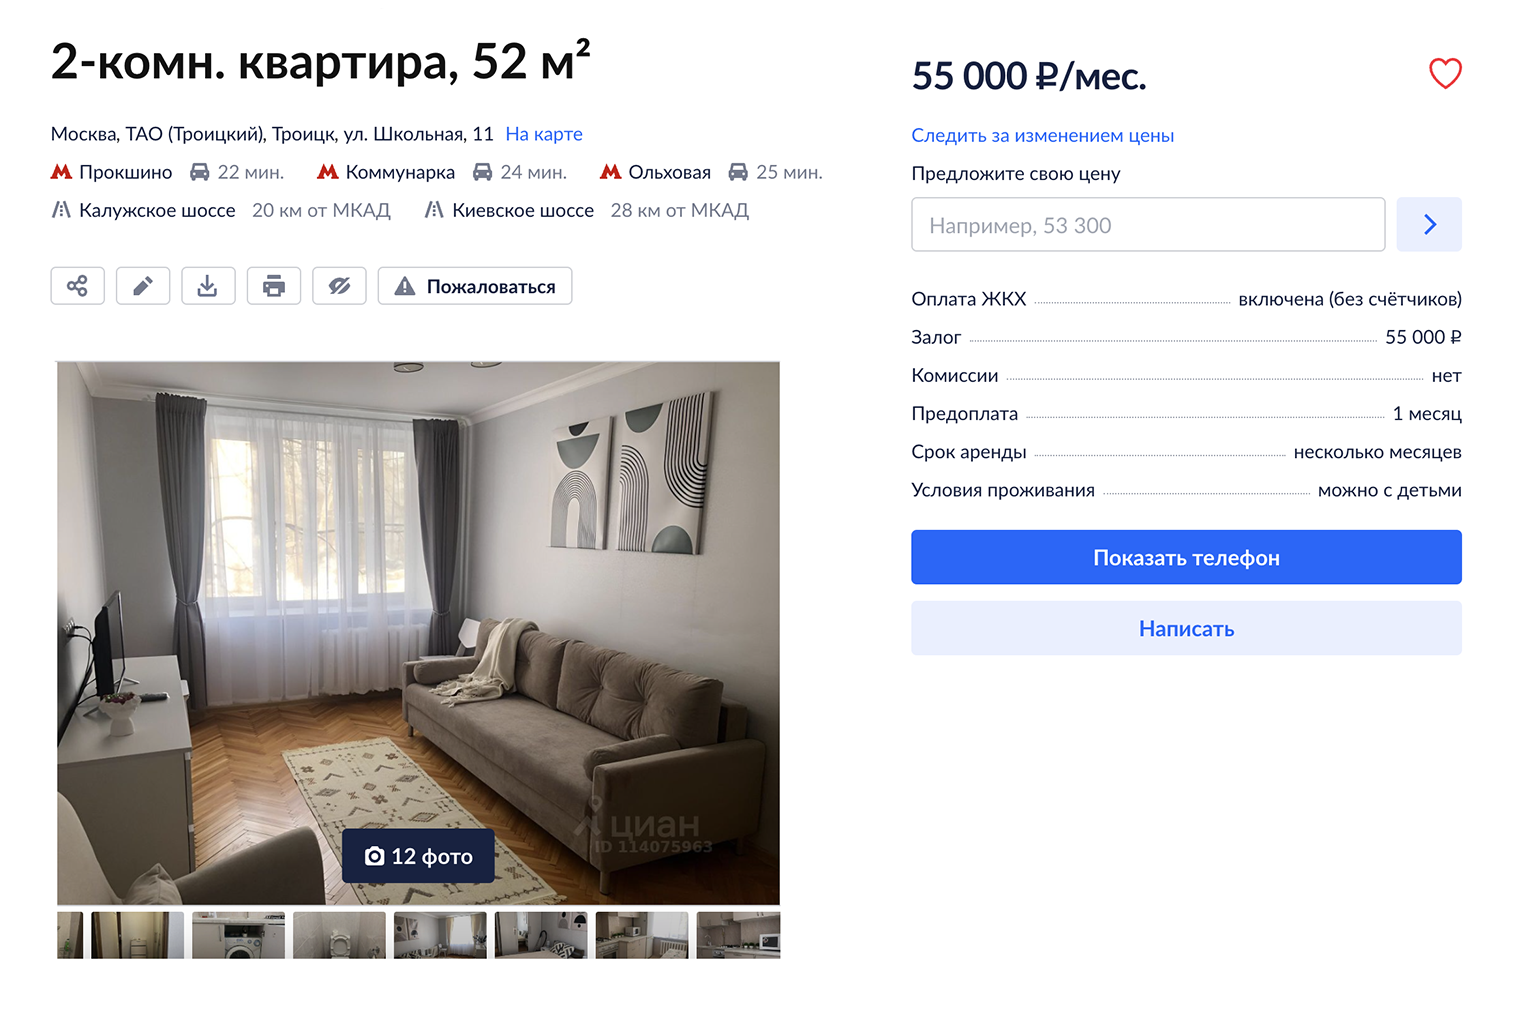 Похожая квартира зимой 2023 года сдавалась за 55 000 ₽. Источник: cian.ru